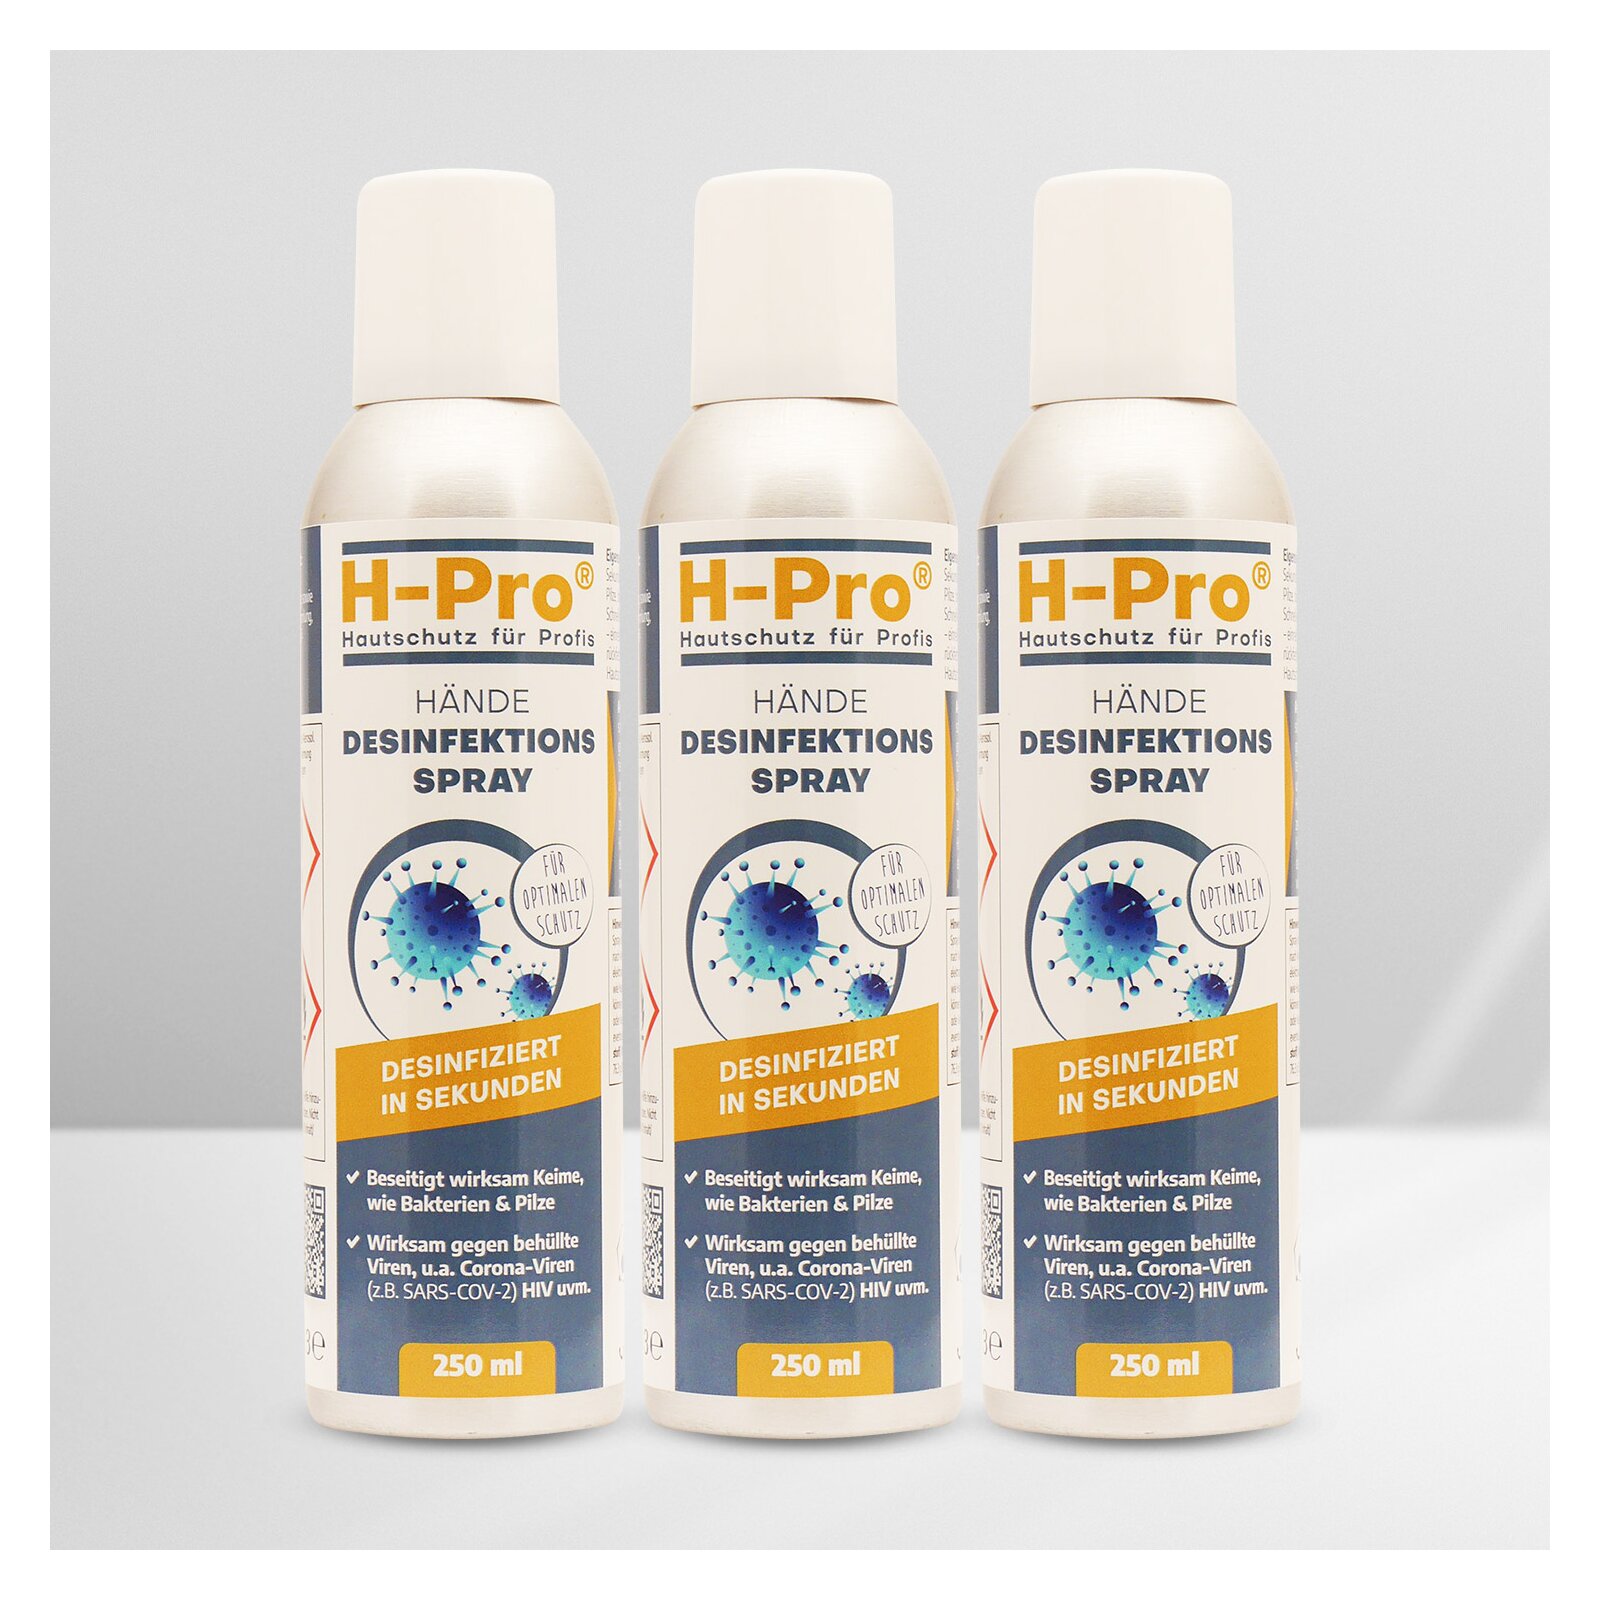 HPro(R) Händedesinfektion Spray 250ml 3 x DosenSet unter H-Pro Hautschutz